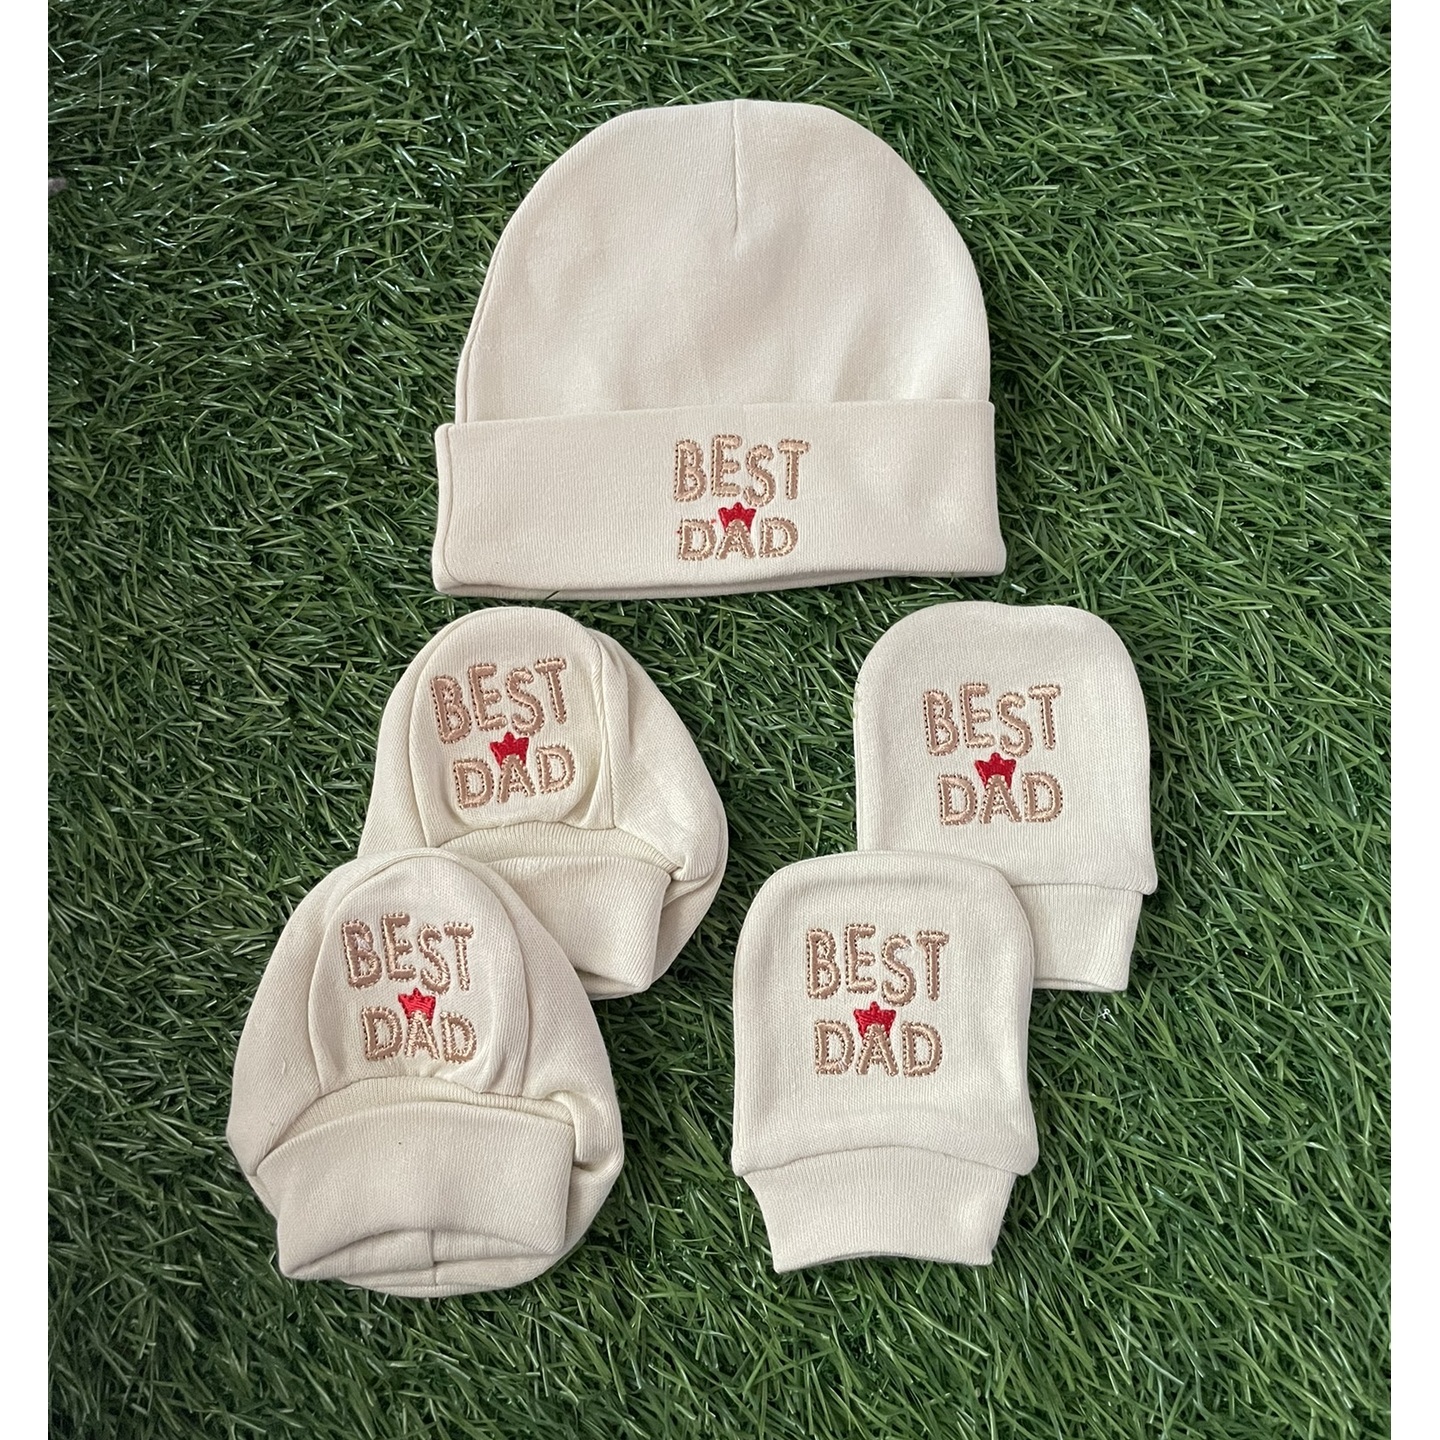 Cradle Togs Newborn Baby Cap Mitten Booties Set